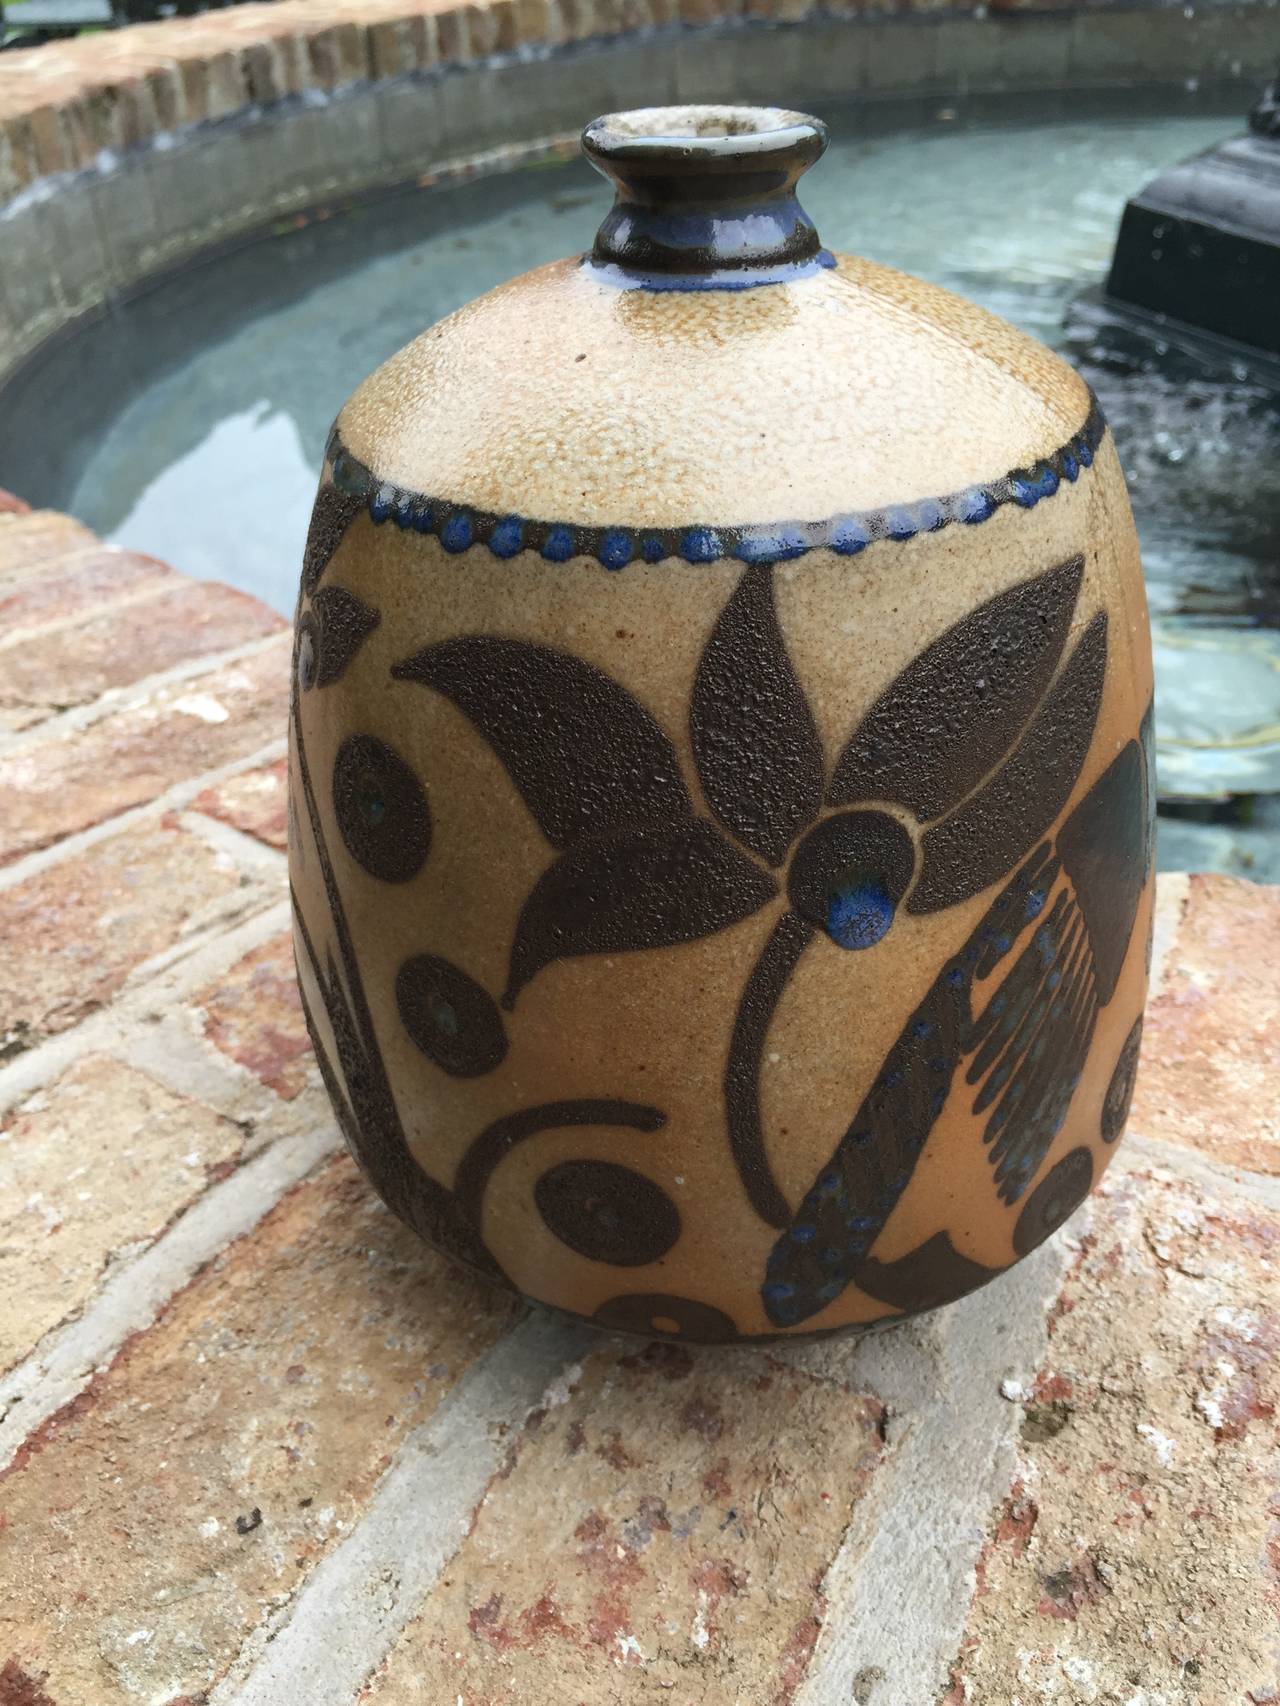 Finition émaillée sur ce vase en céramique joliment orné dans des teintes de brun clair et de bleu. Représentation d'oiseaux et de formes géométriques.